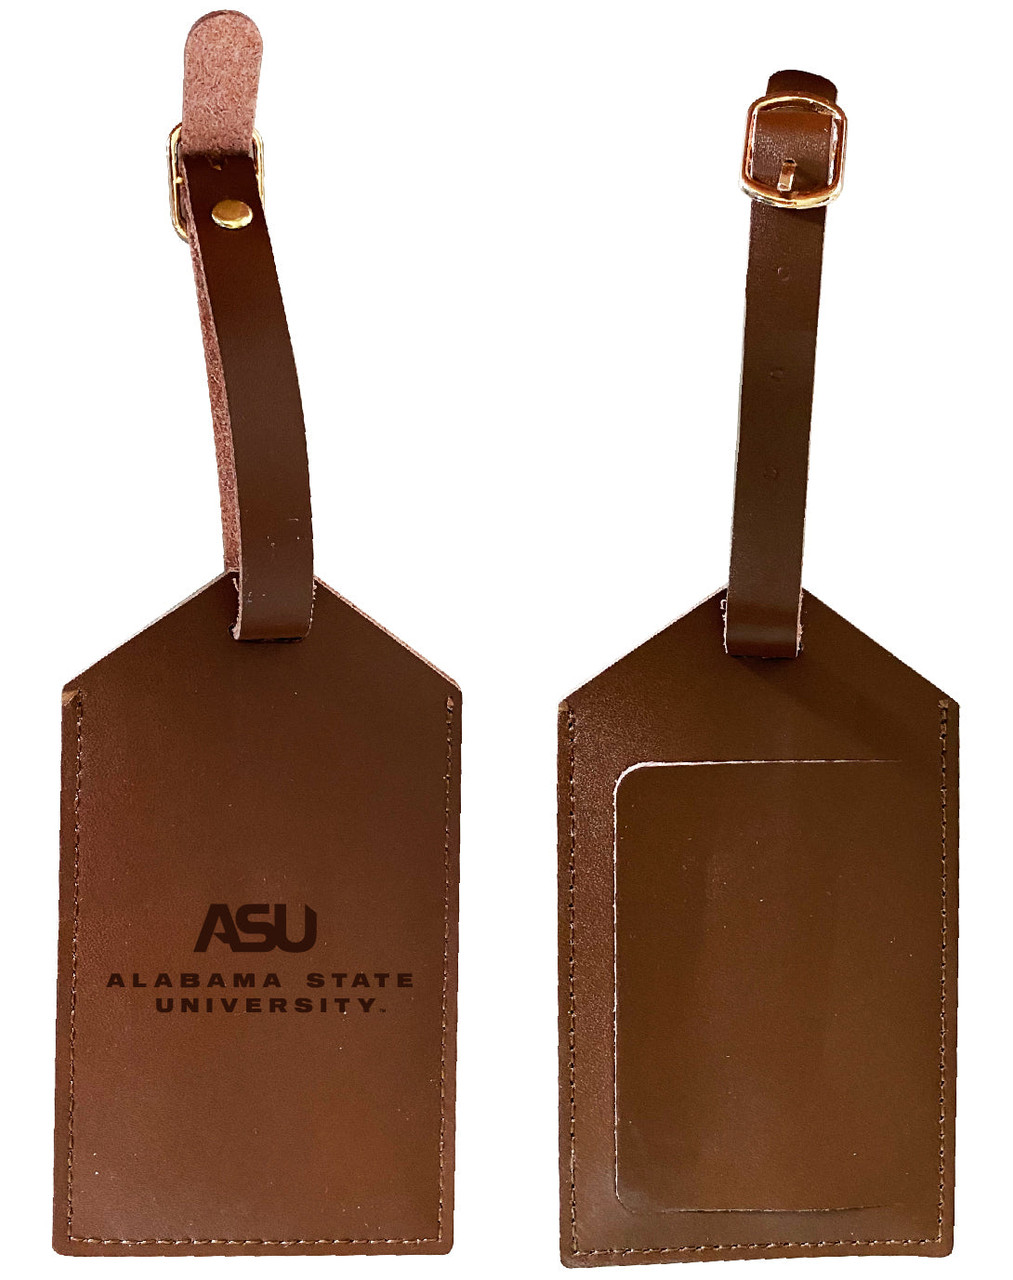 Alabama State University Leather Luggage Tag Engraved